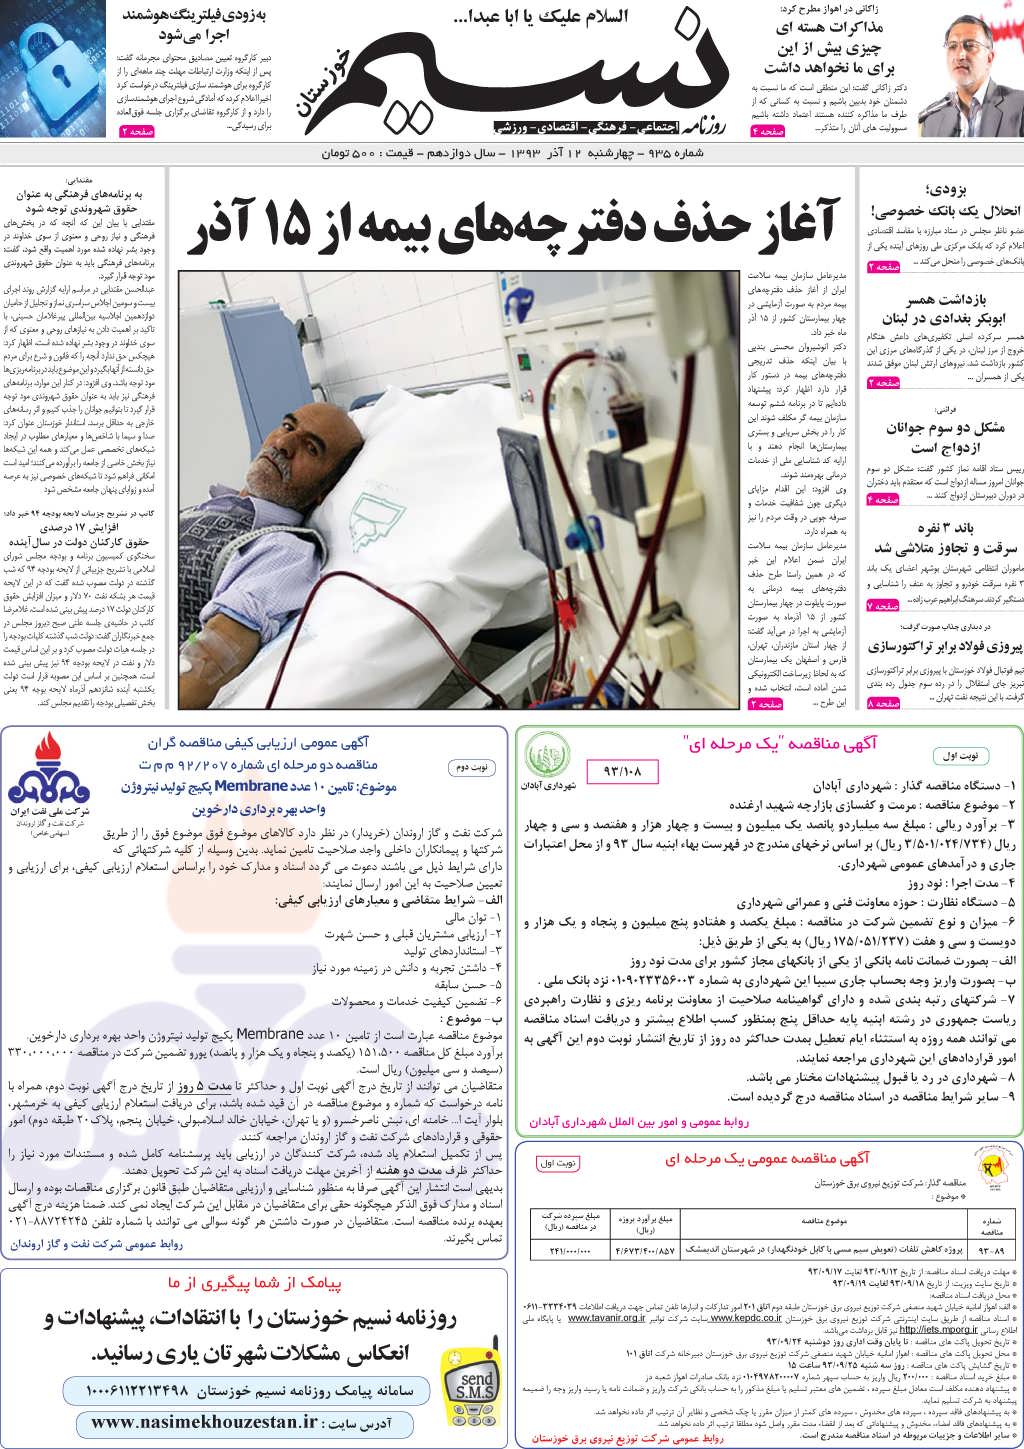 صفحه اصلی روزنامه نسیم شماره 935 